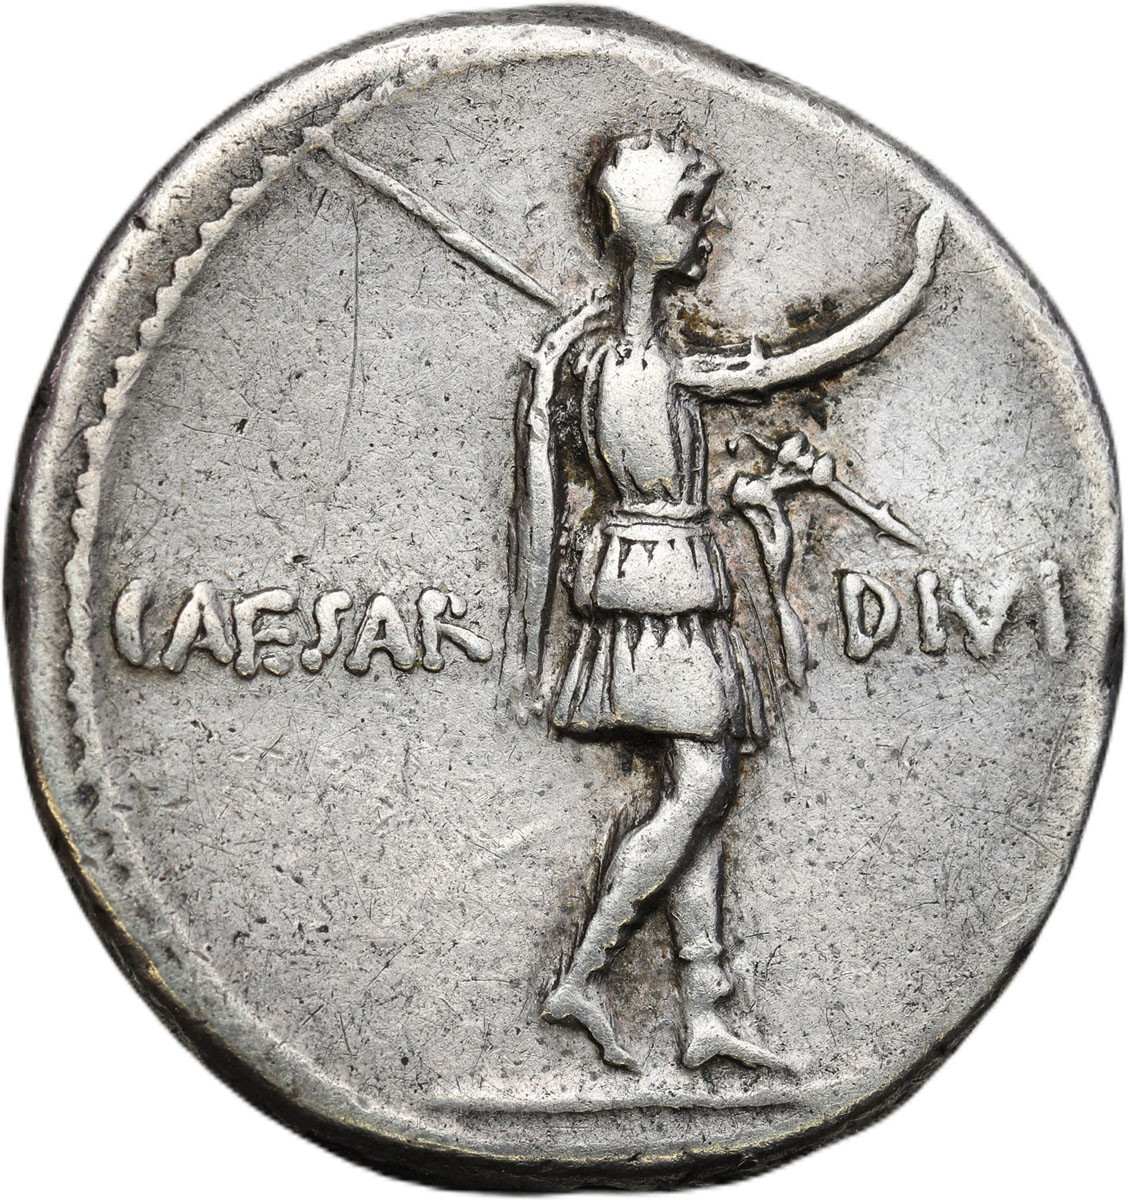 Cesarstwo Rzymskie. Denar, Oktawian August 27 p .n. e. - 14 n.e., Brundisium lub Rzym – RZADKI